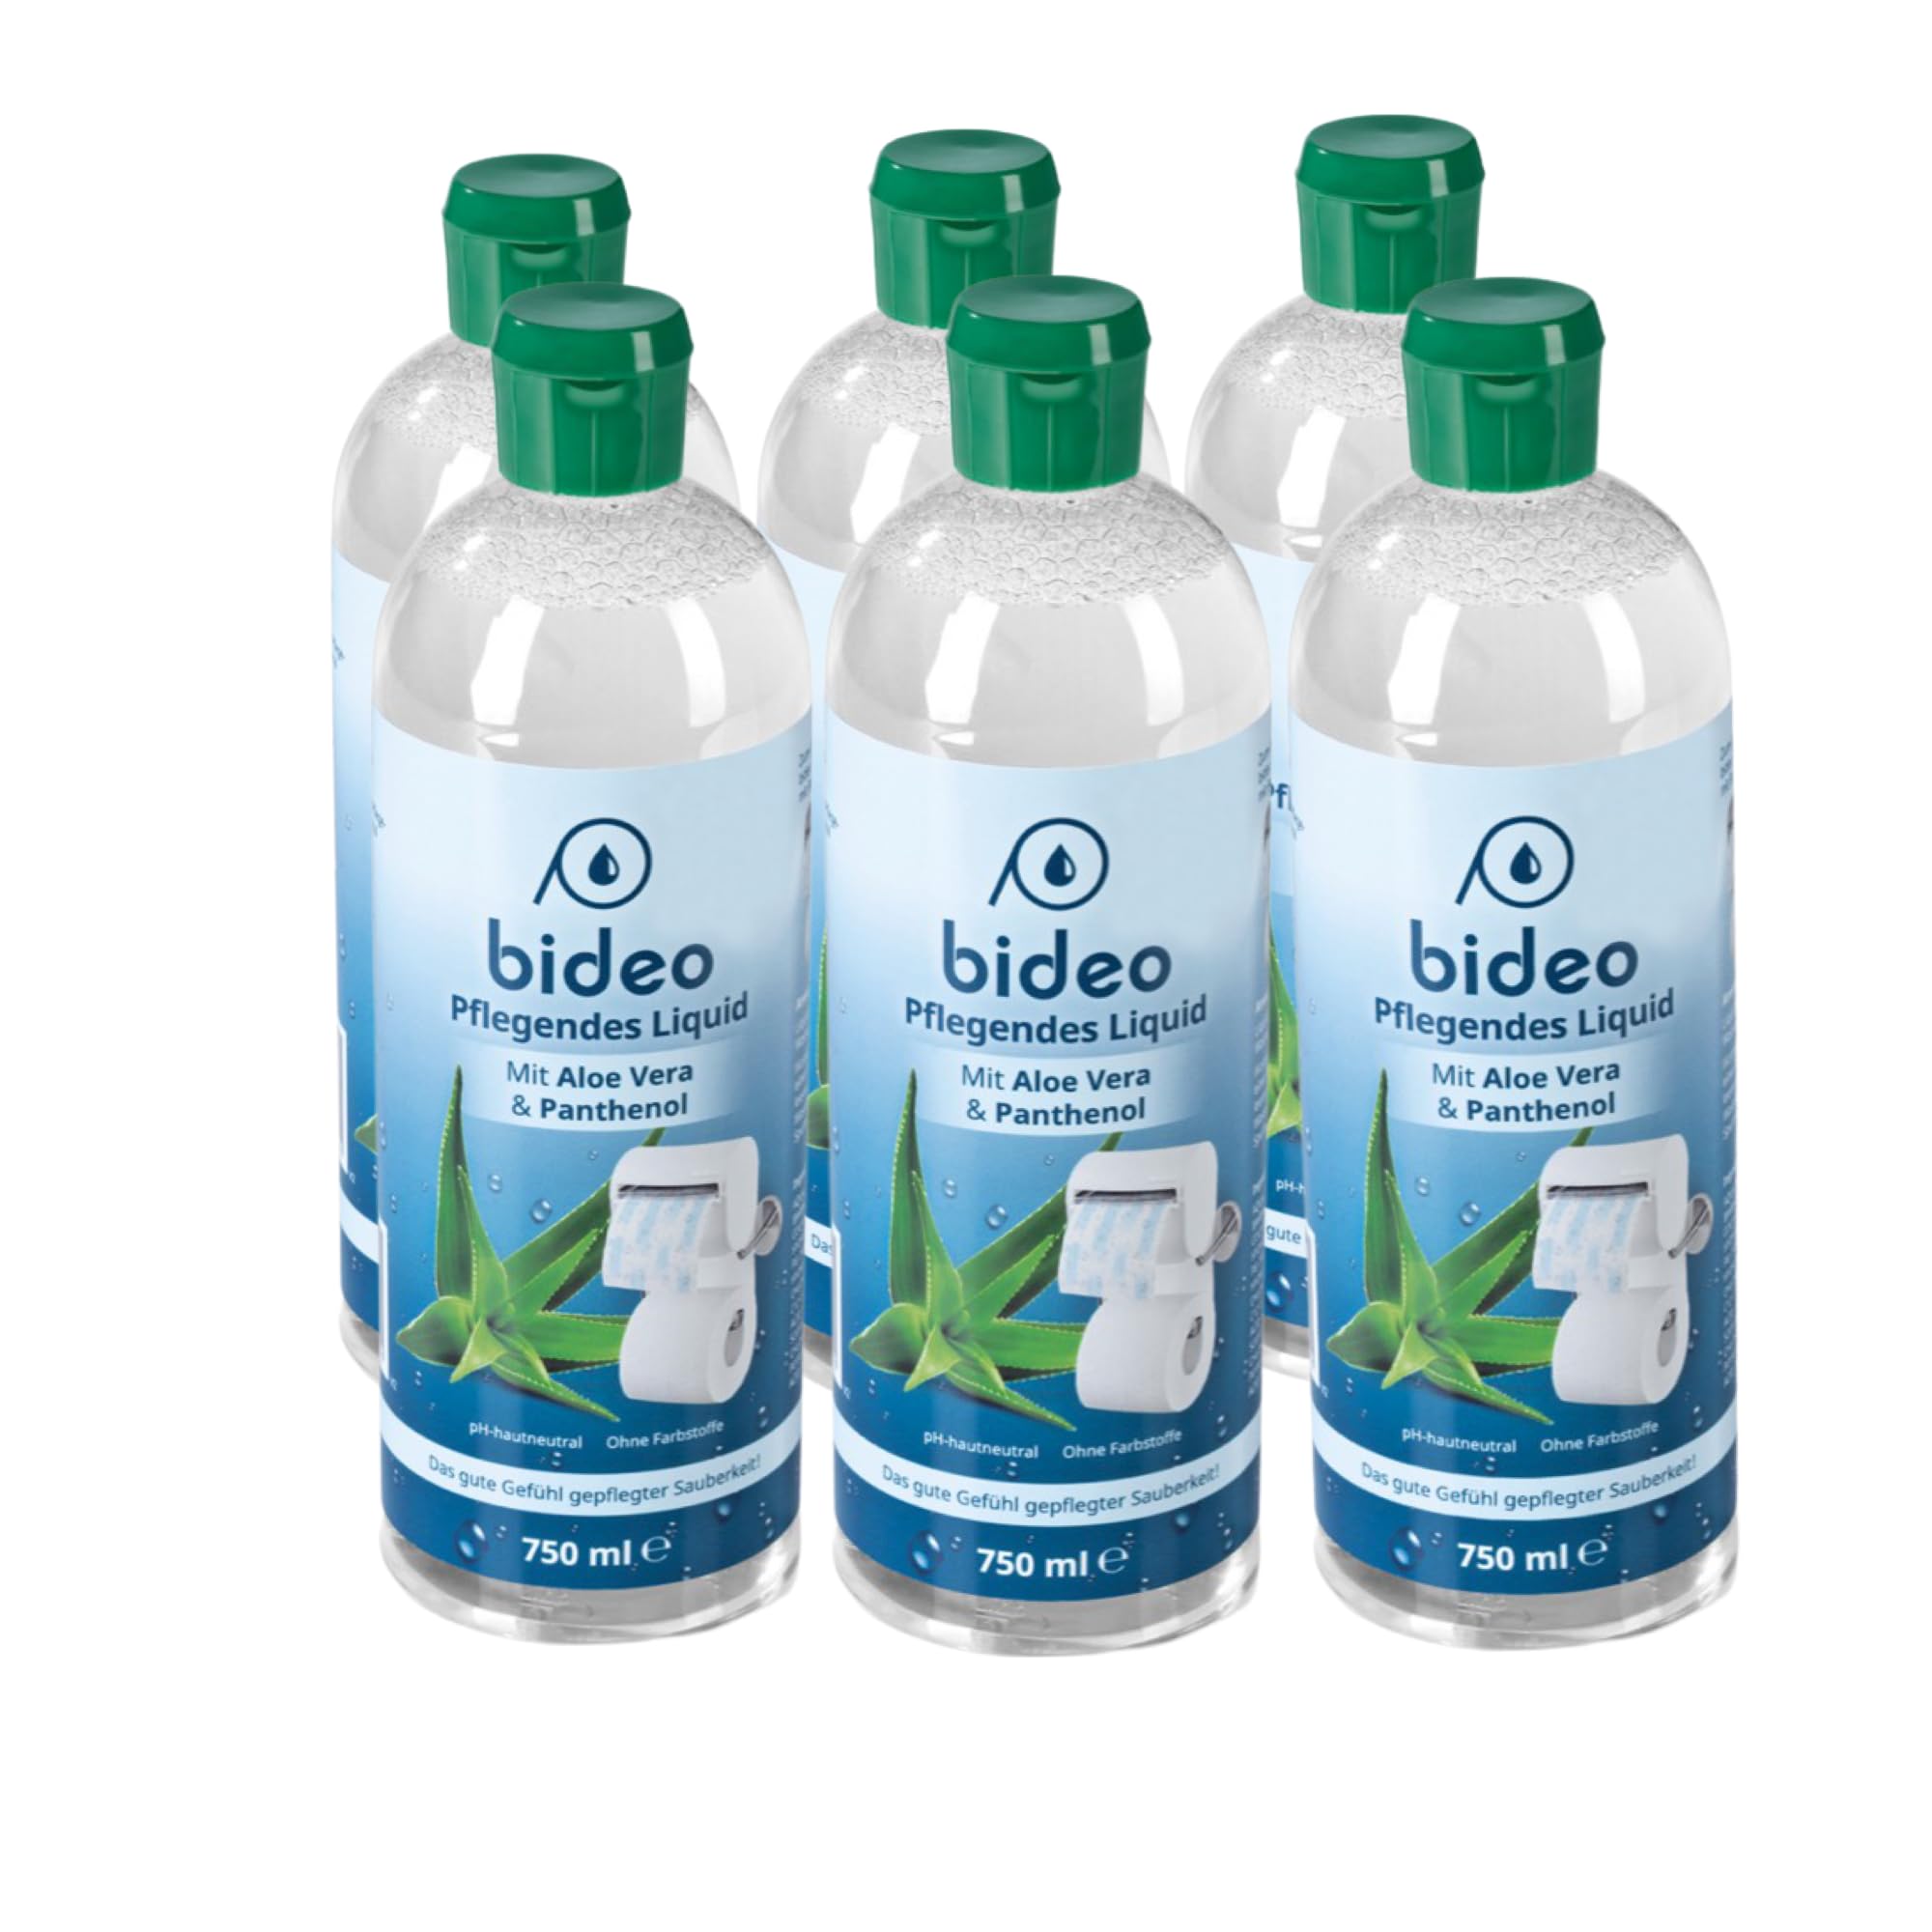 bideo® Haut- und Intimpflege Aloe Vera, für bideo Toilettenpapierhalter inkl. Befeuchter | Erfrischend, pflegend und frisch | Ohne Farbstoffe - pH-hautneutral (6)